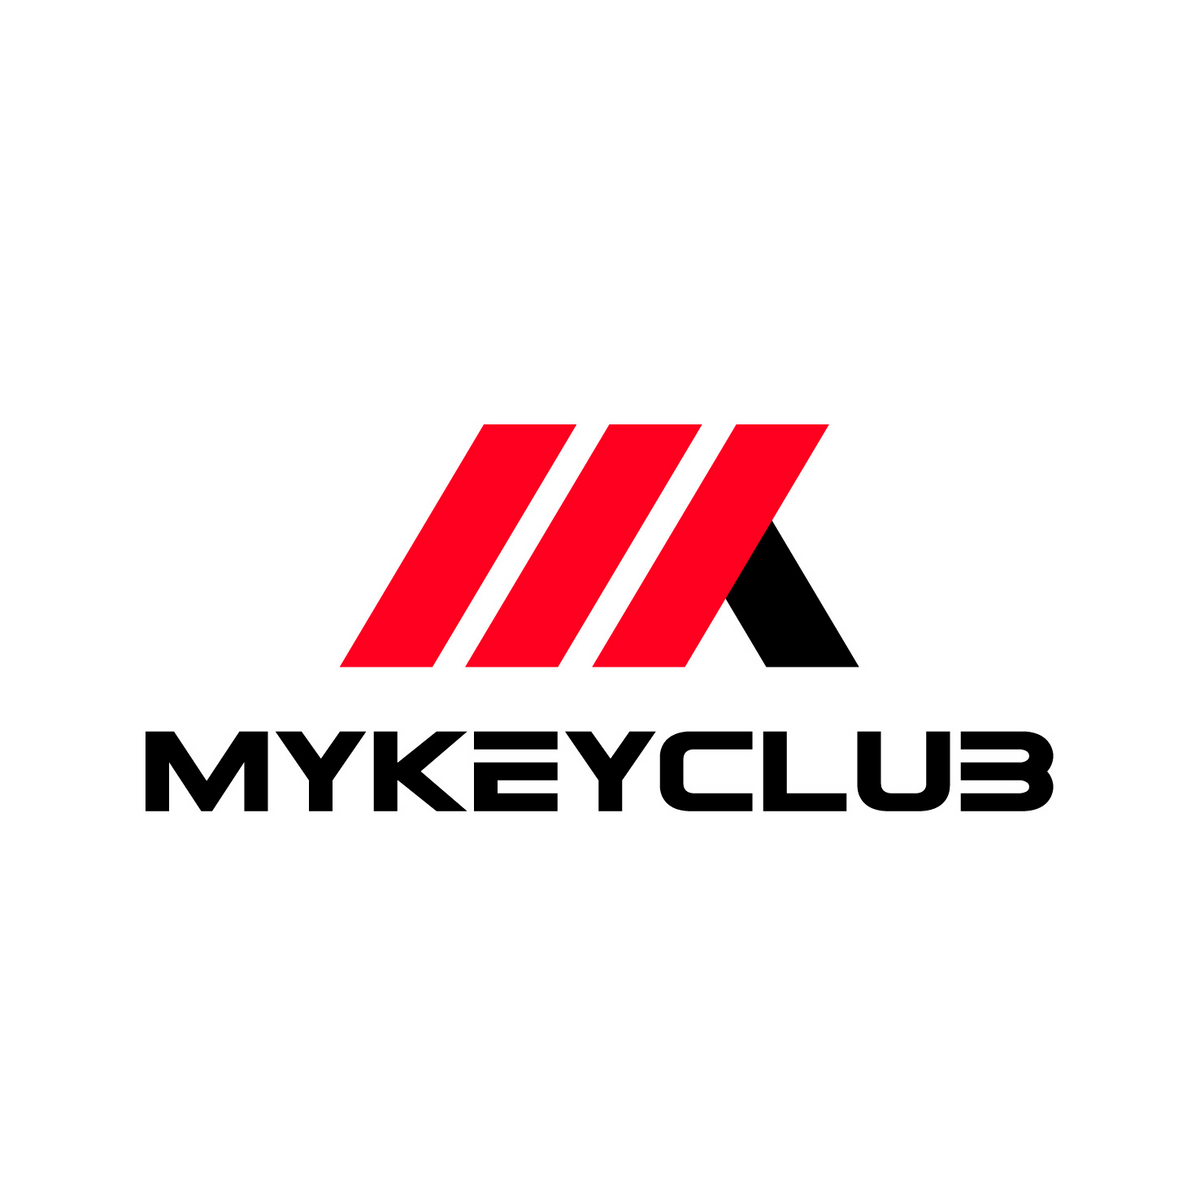 www.mykeyclub.com